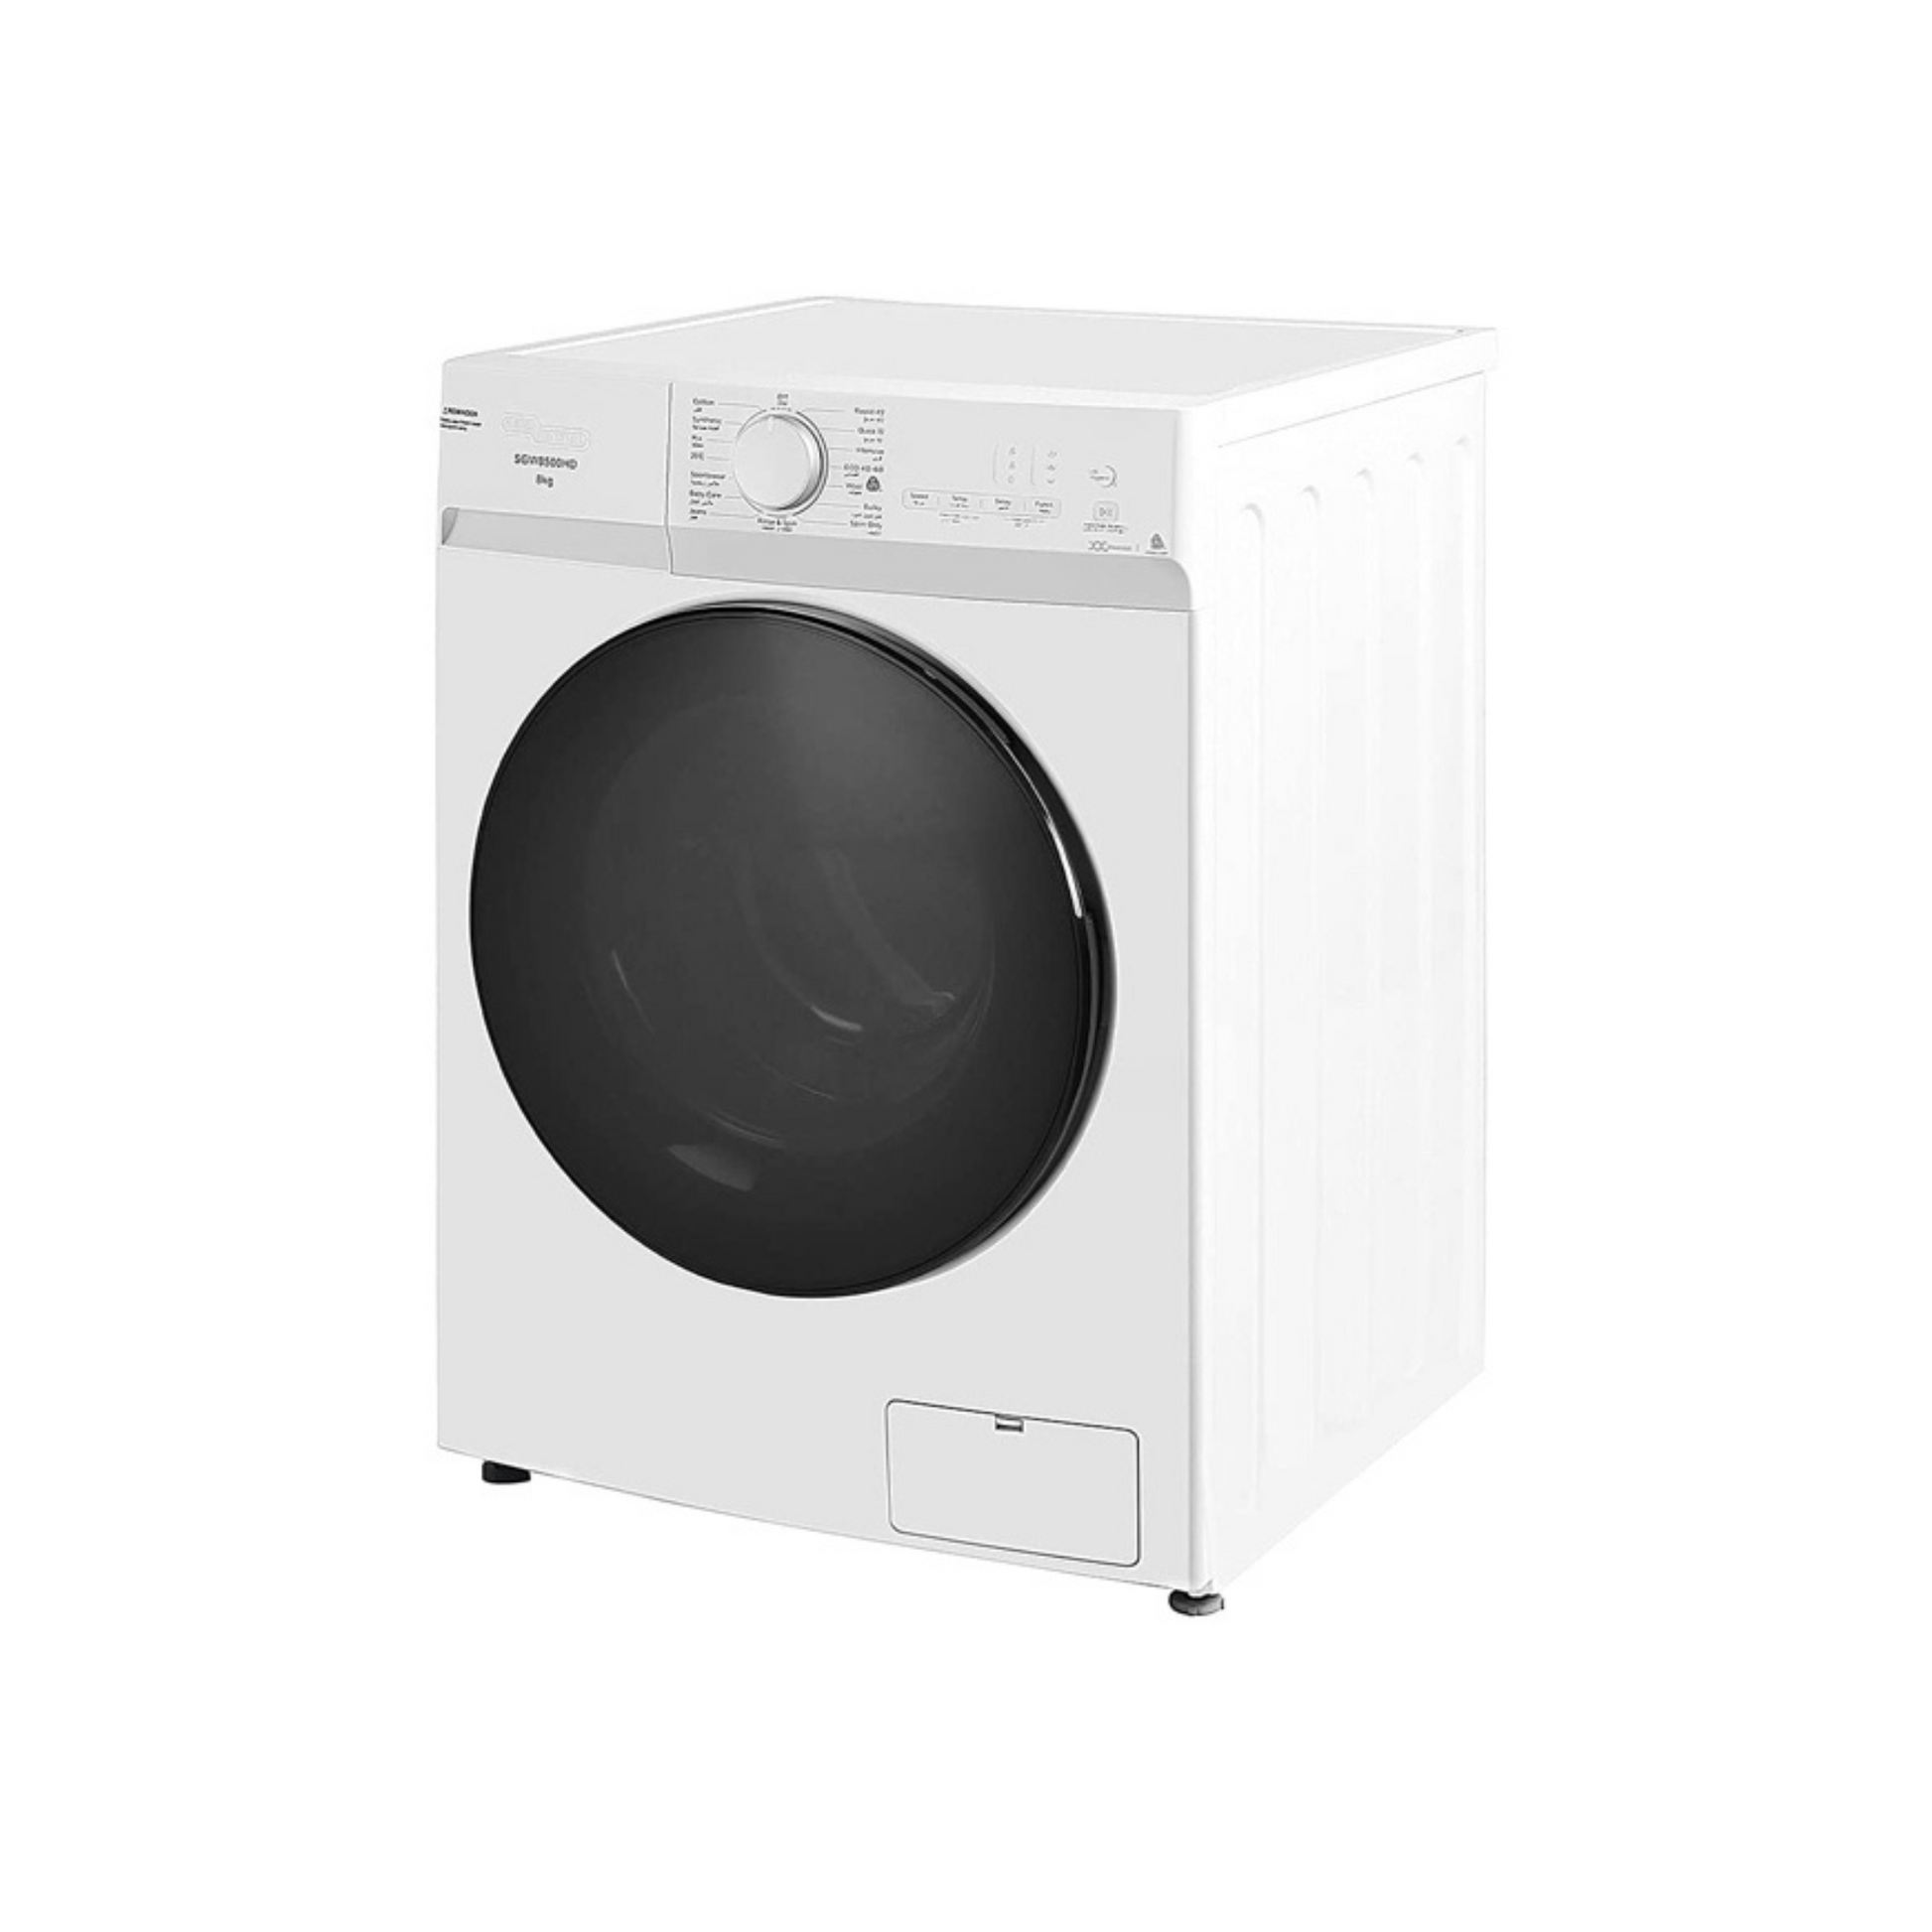 Super General 8KG Fully Automatic Washing Machine, SGW8500HD